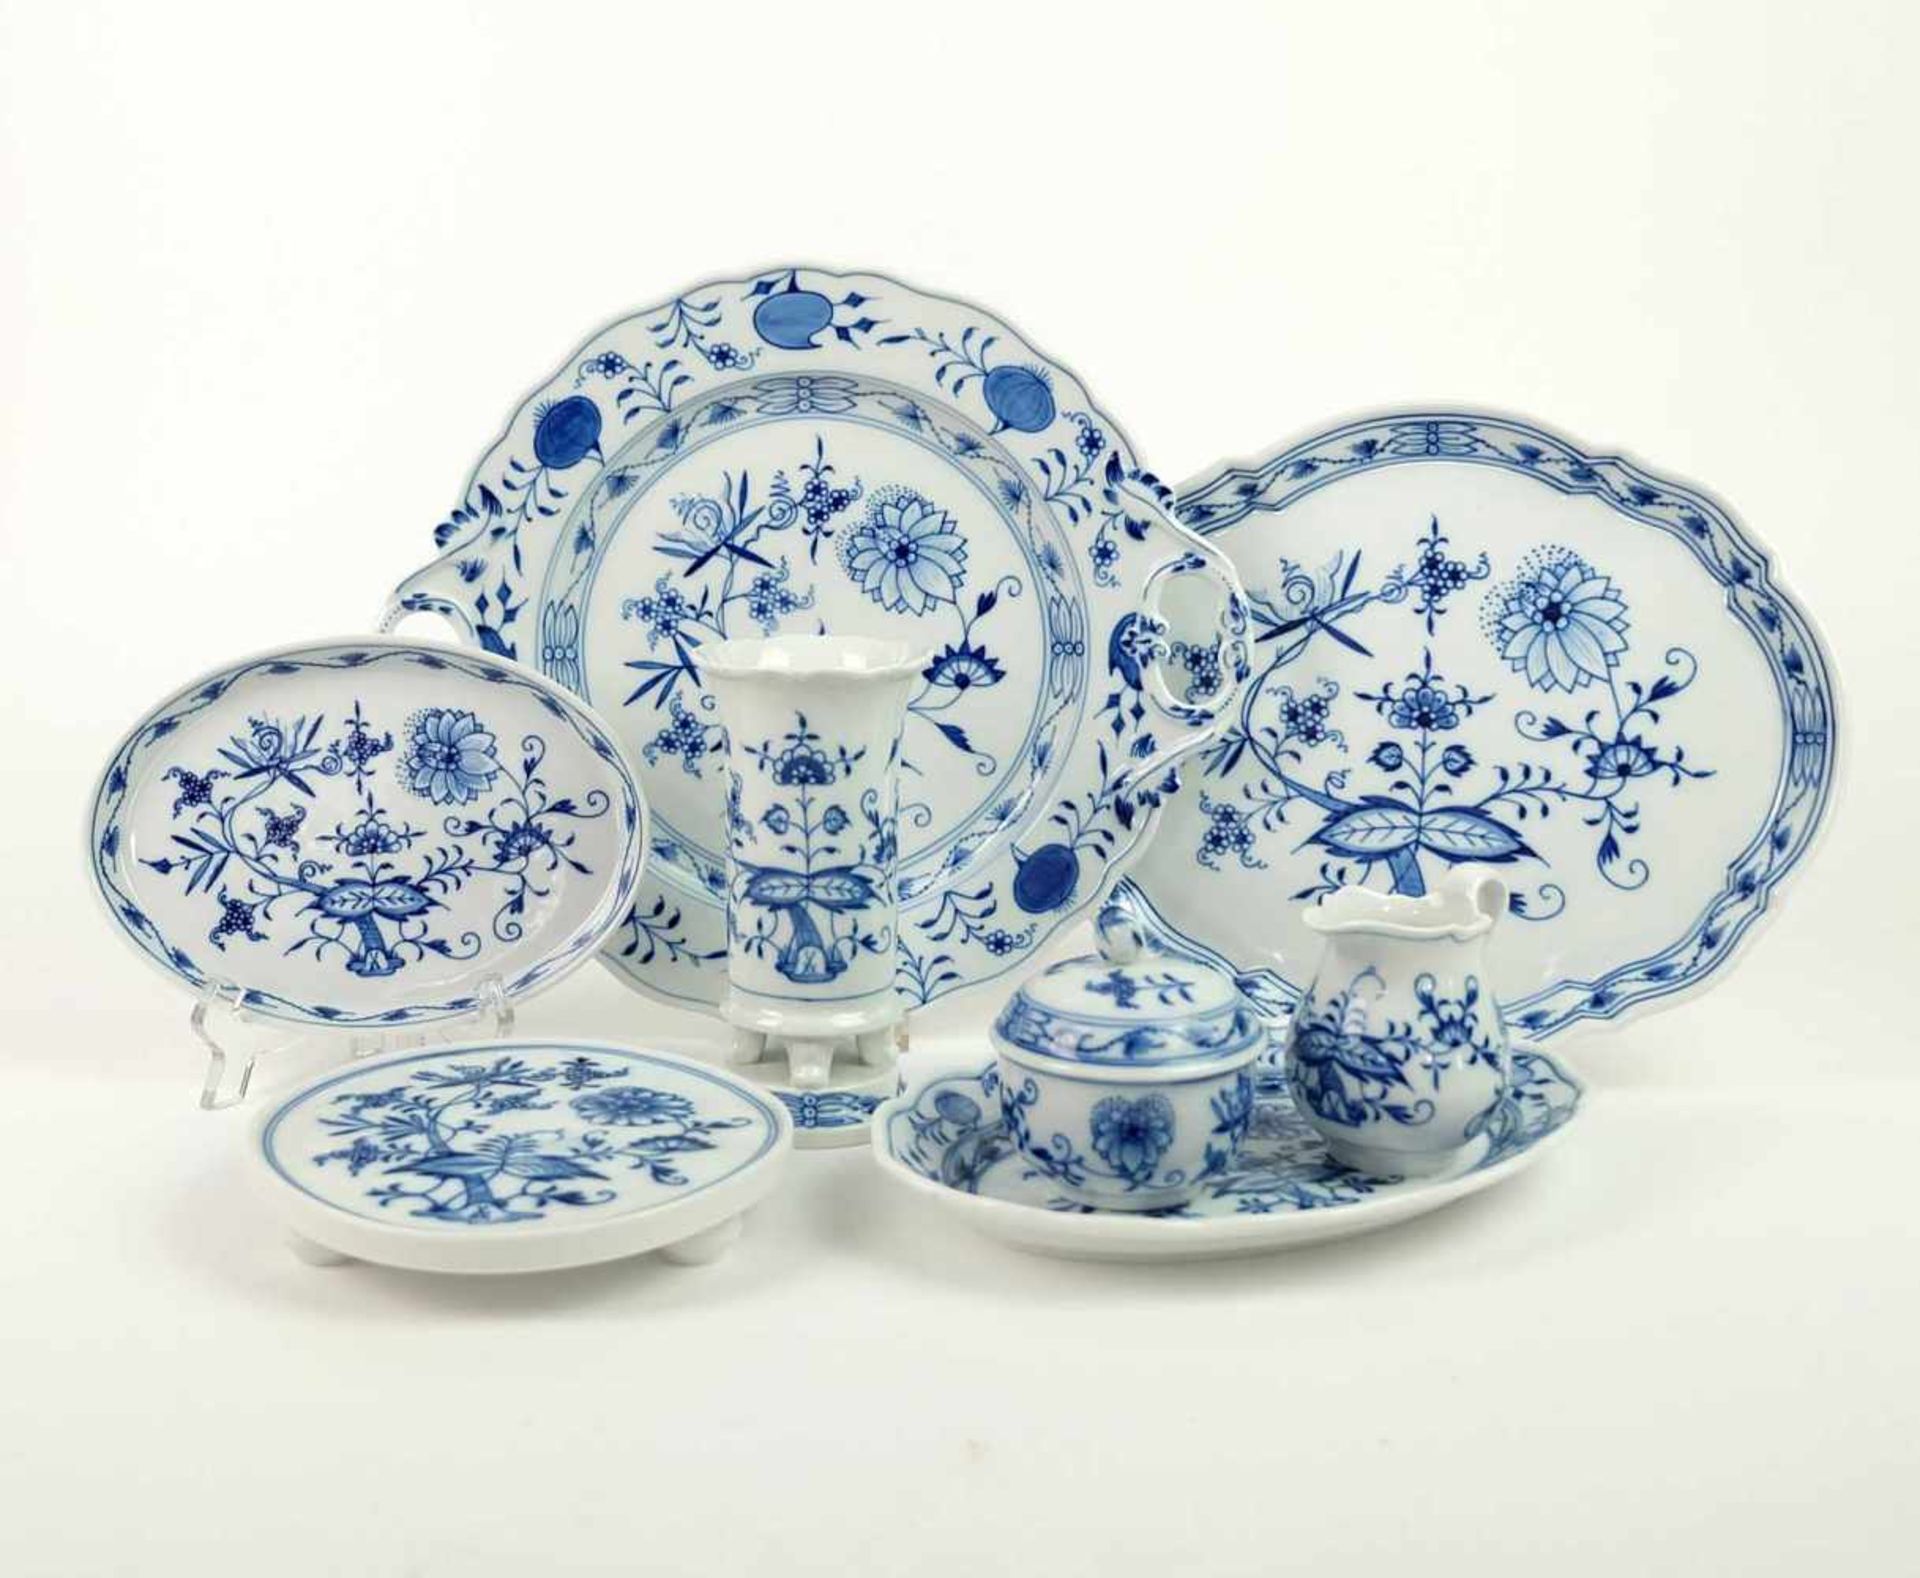 KONVOLUT, Staatl. Porzellanmanuf Meissen, 8 Teile, Dekor Zwiebelmuster Blau, bestehend aus: Platte